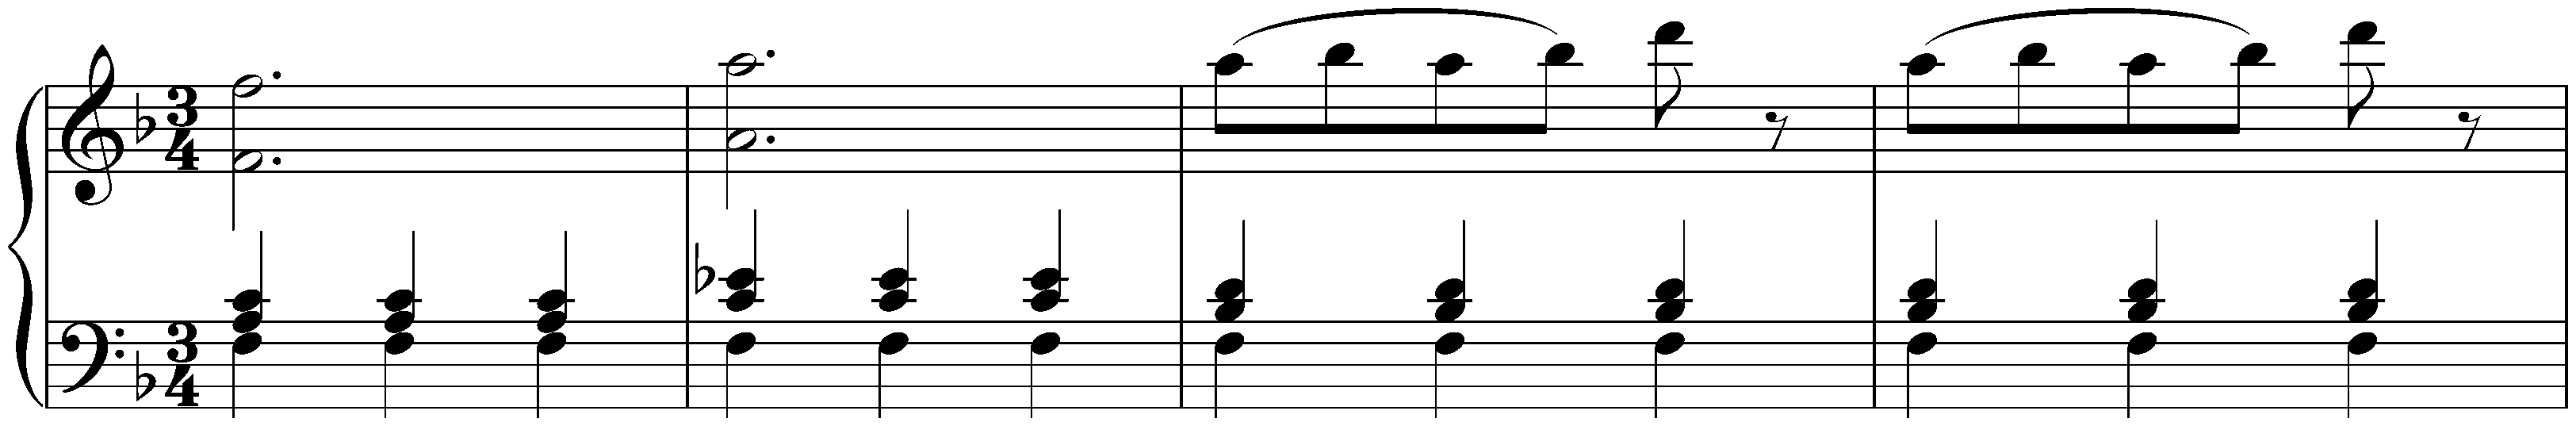 Twelve deutsche Tänze, Hob. IX:12; 11. F major